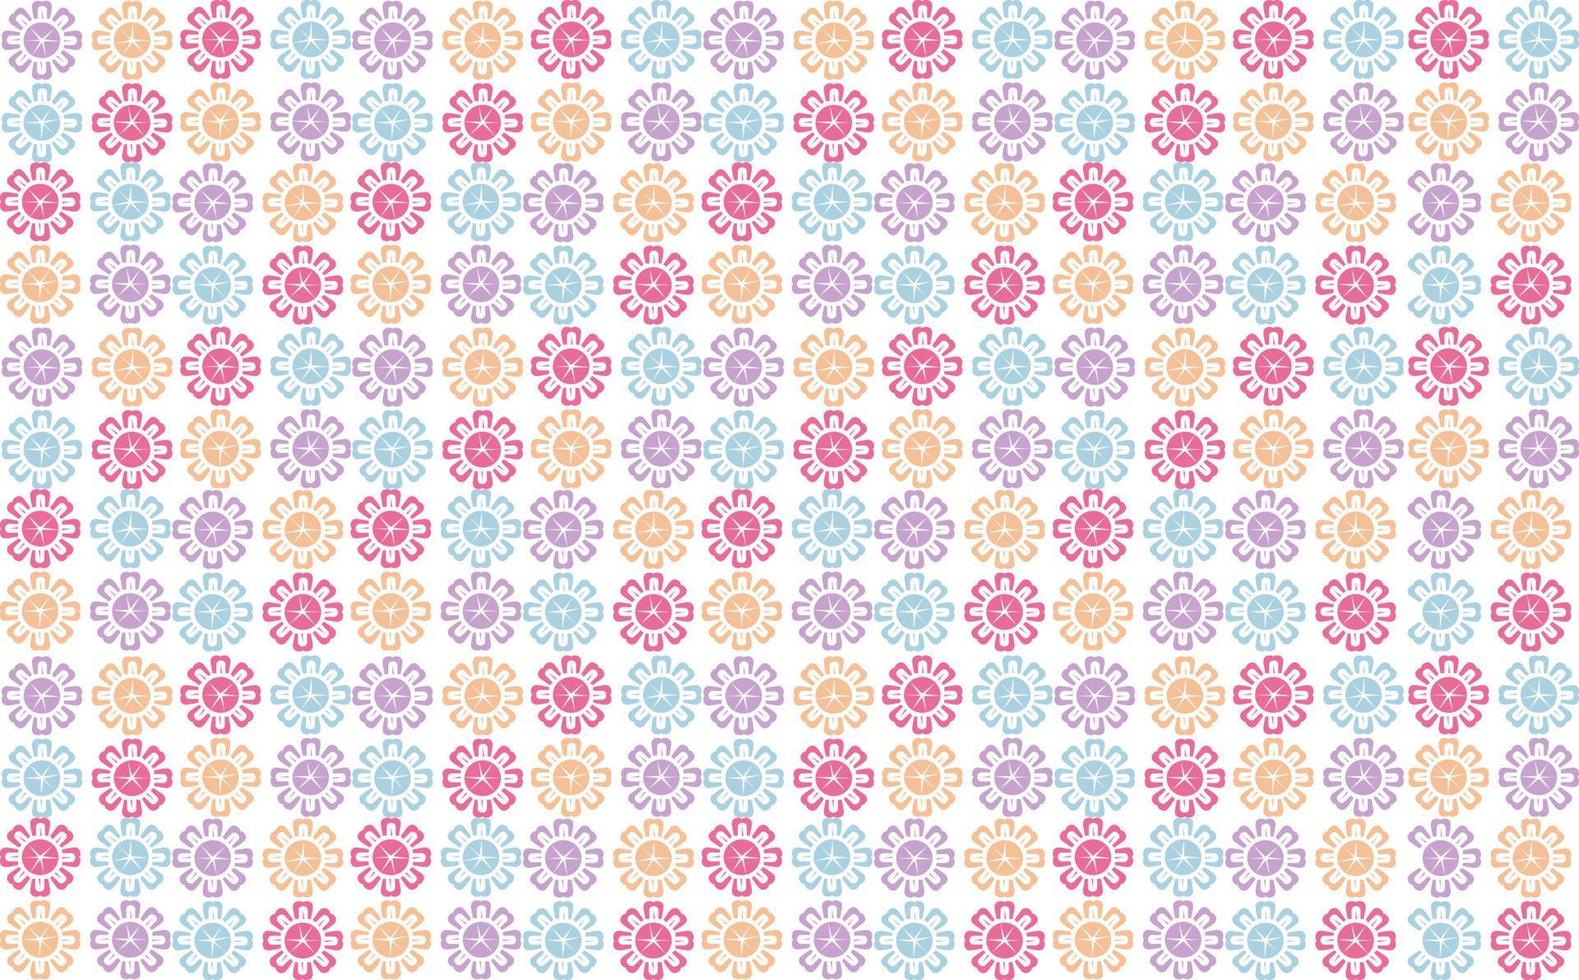 bunt Pastell- Blume gefliest Muster. geeignet zum Stoff, Marke, Hintergrund, Banner, Abdeckung, und Drucke. vektor